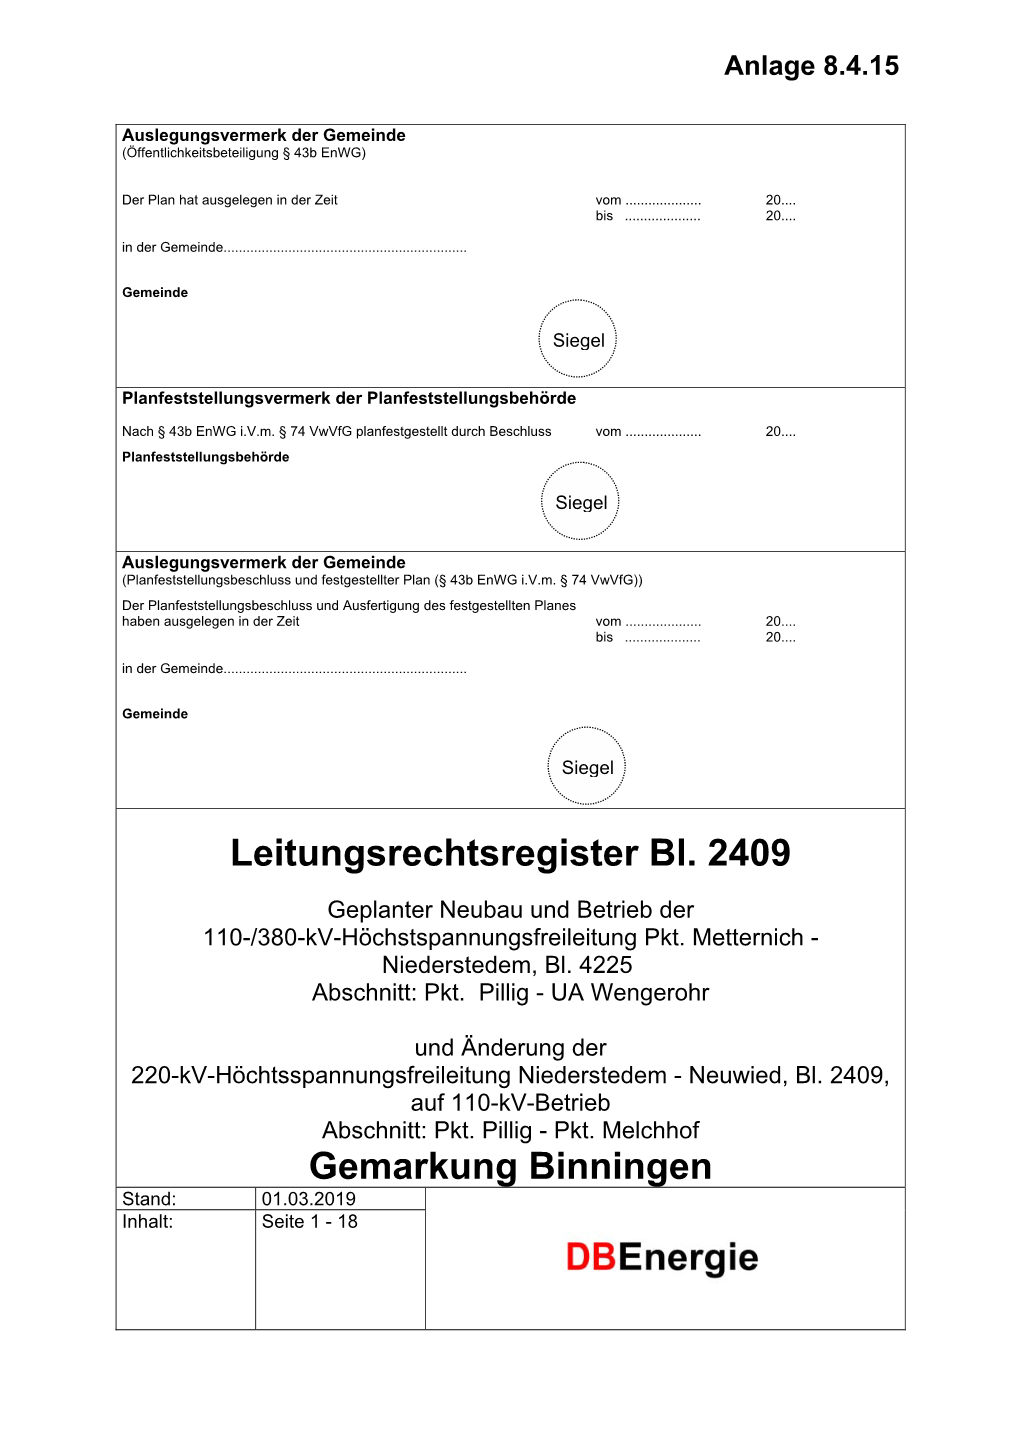 Leitungsrechtsregister Bl. 2409 Gemarkung Binningen